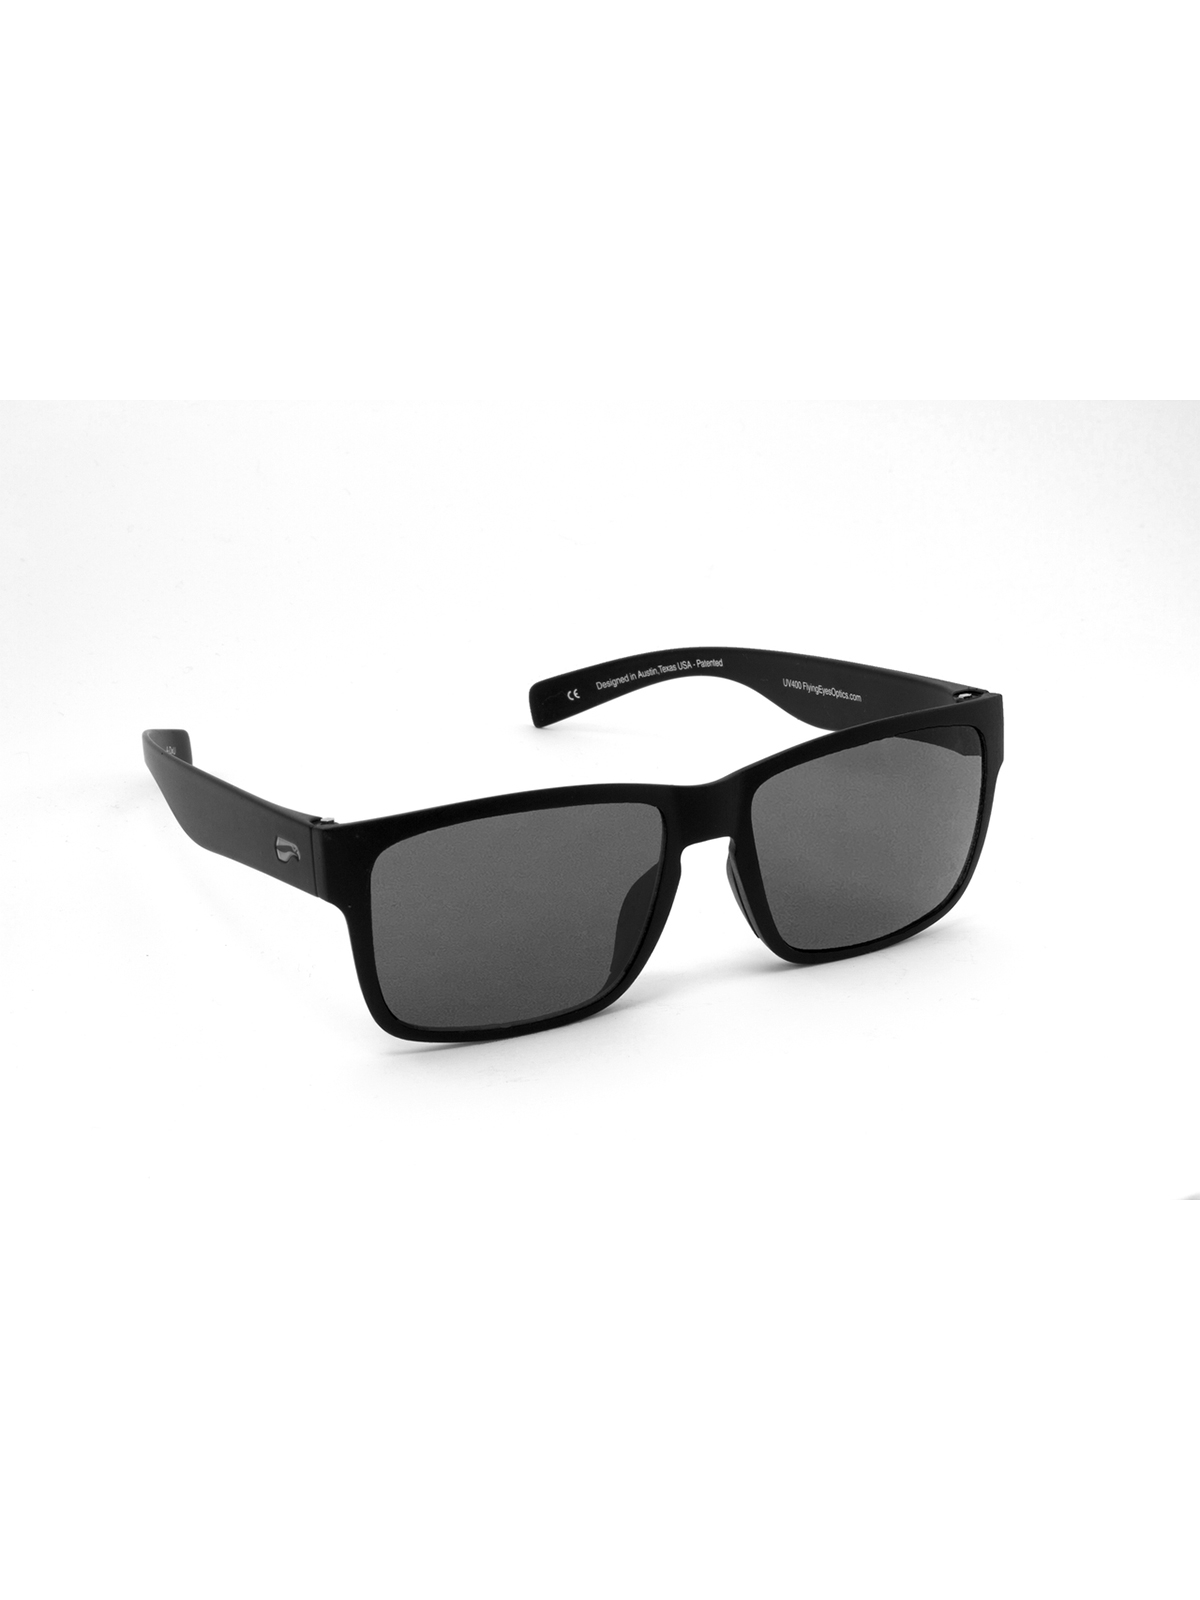 Flying Eyes Sunglasses Osprey - Matte Black Frame, Solid Gray Lenses